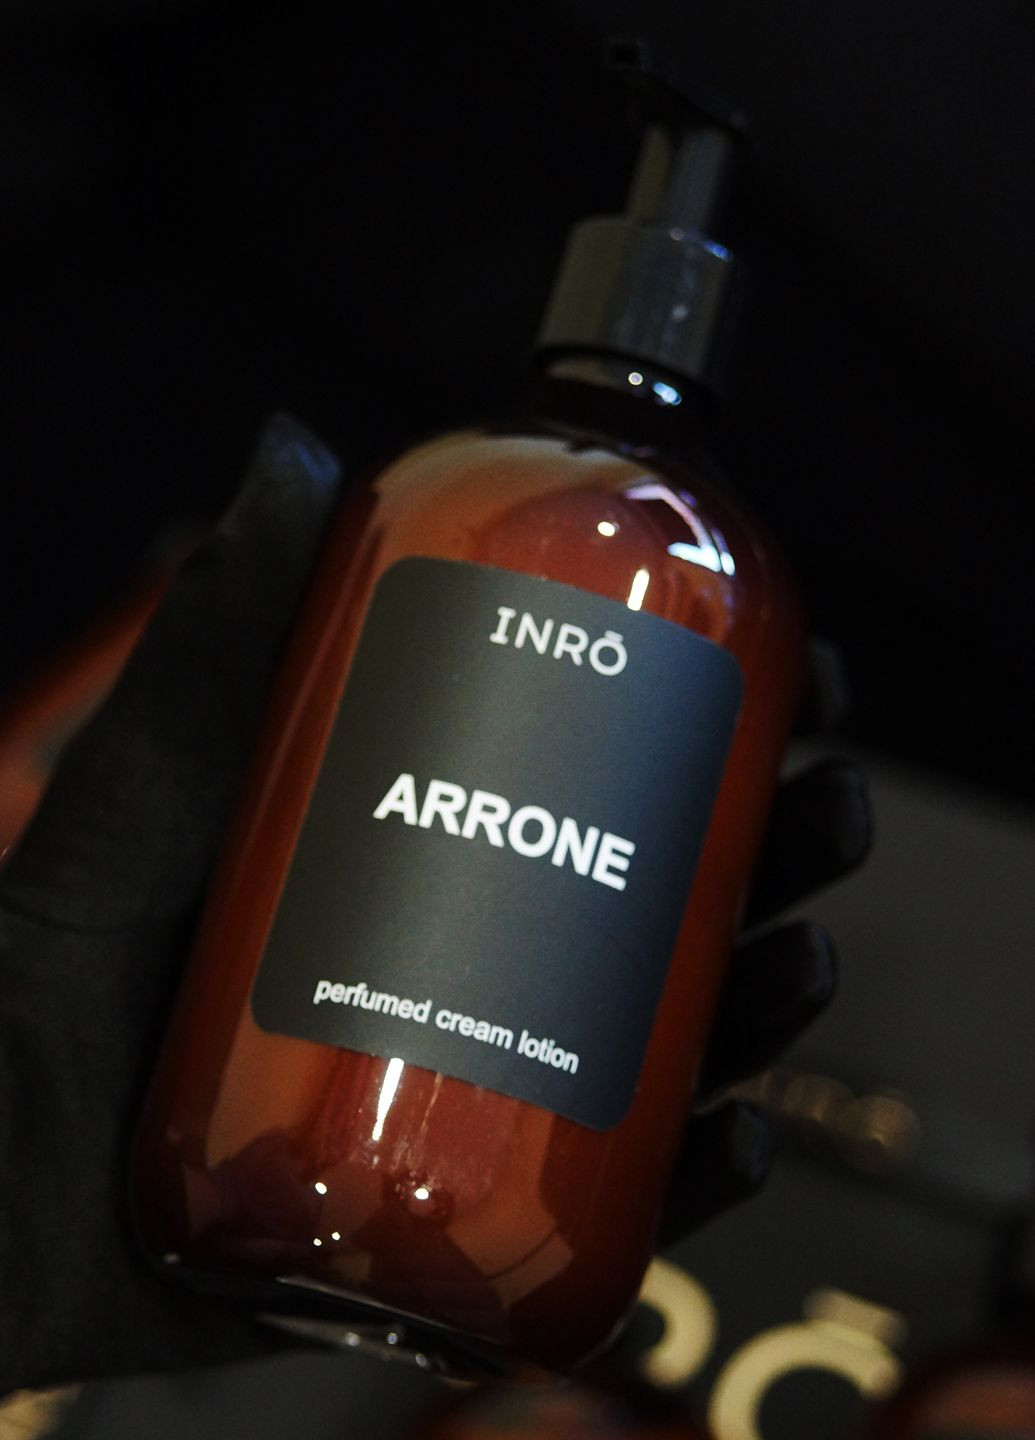 Лосьйон для тіла, парфумований крем лосьйон "ARRONE" 500 мл INRO (280917627)